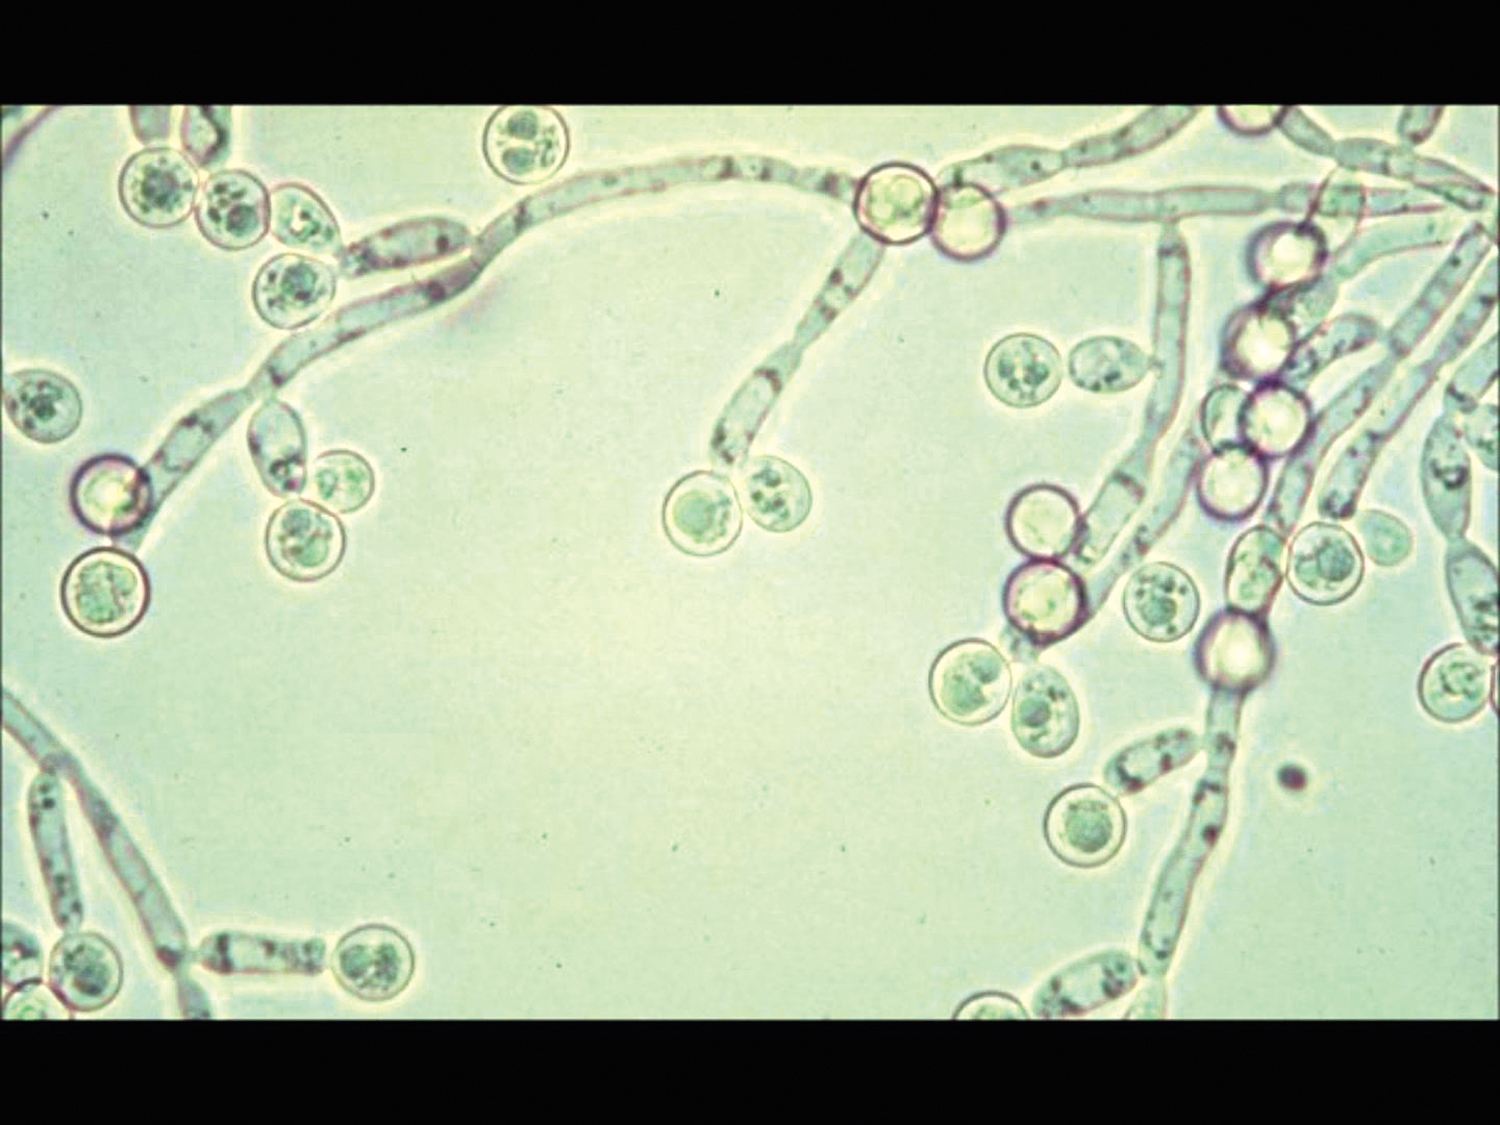 念珠菌即假丝酵母菌,其中白色念珠菌(白假丝酵母菌)是引起女性阴道炎